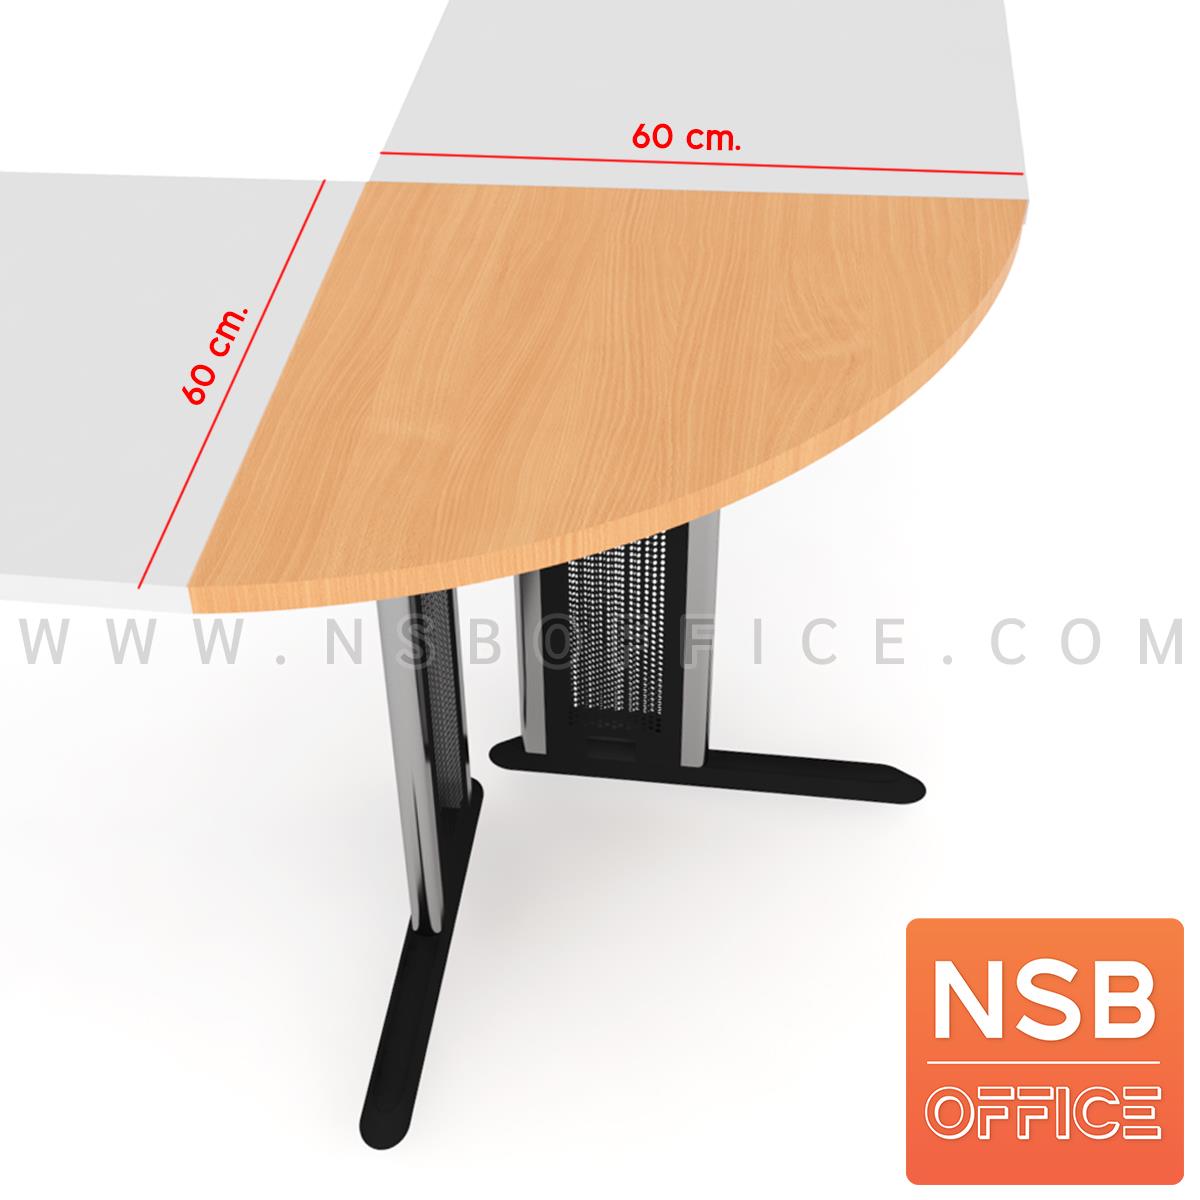 A05A250:โต๊ะเข้ามุมทรงโค้ง รุ่น Billy (บิลลี่) ขนาด 60W cm. ขาเหล็กตัวแอล